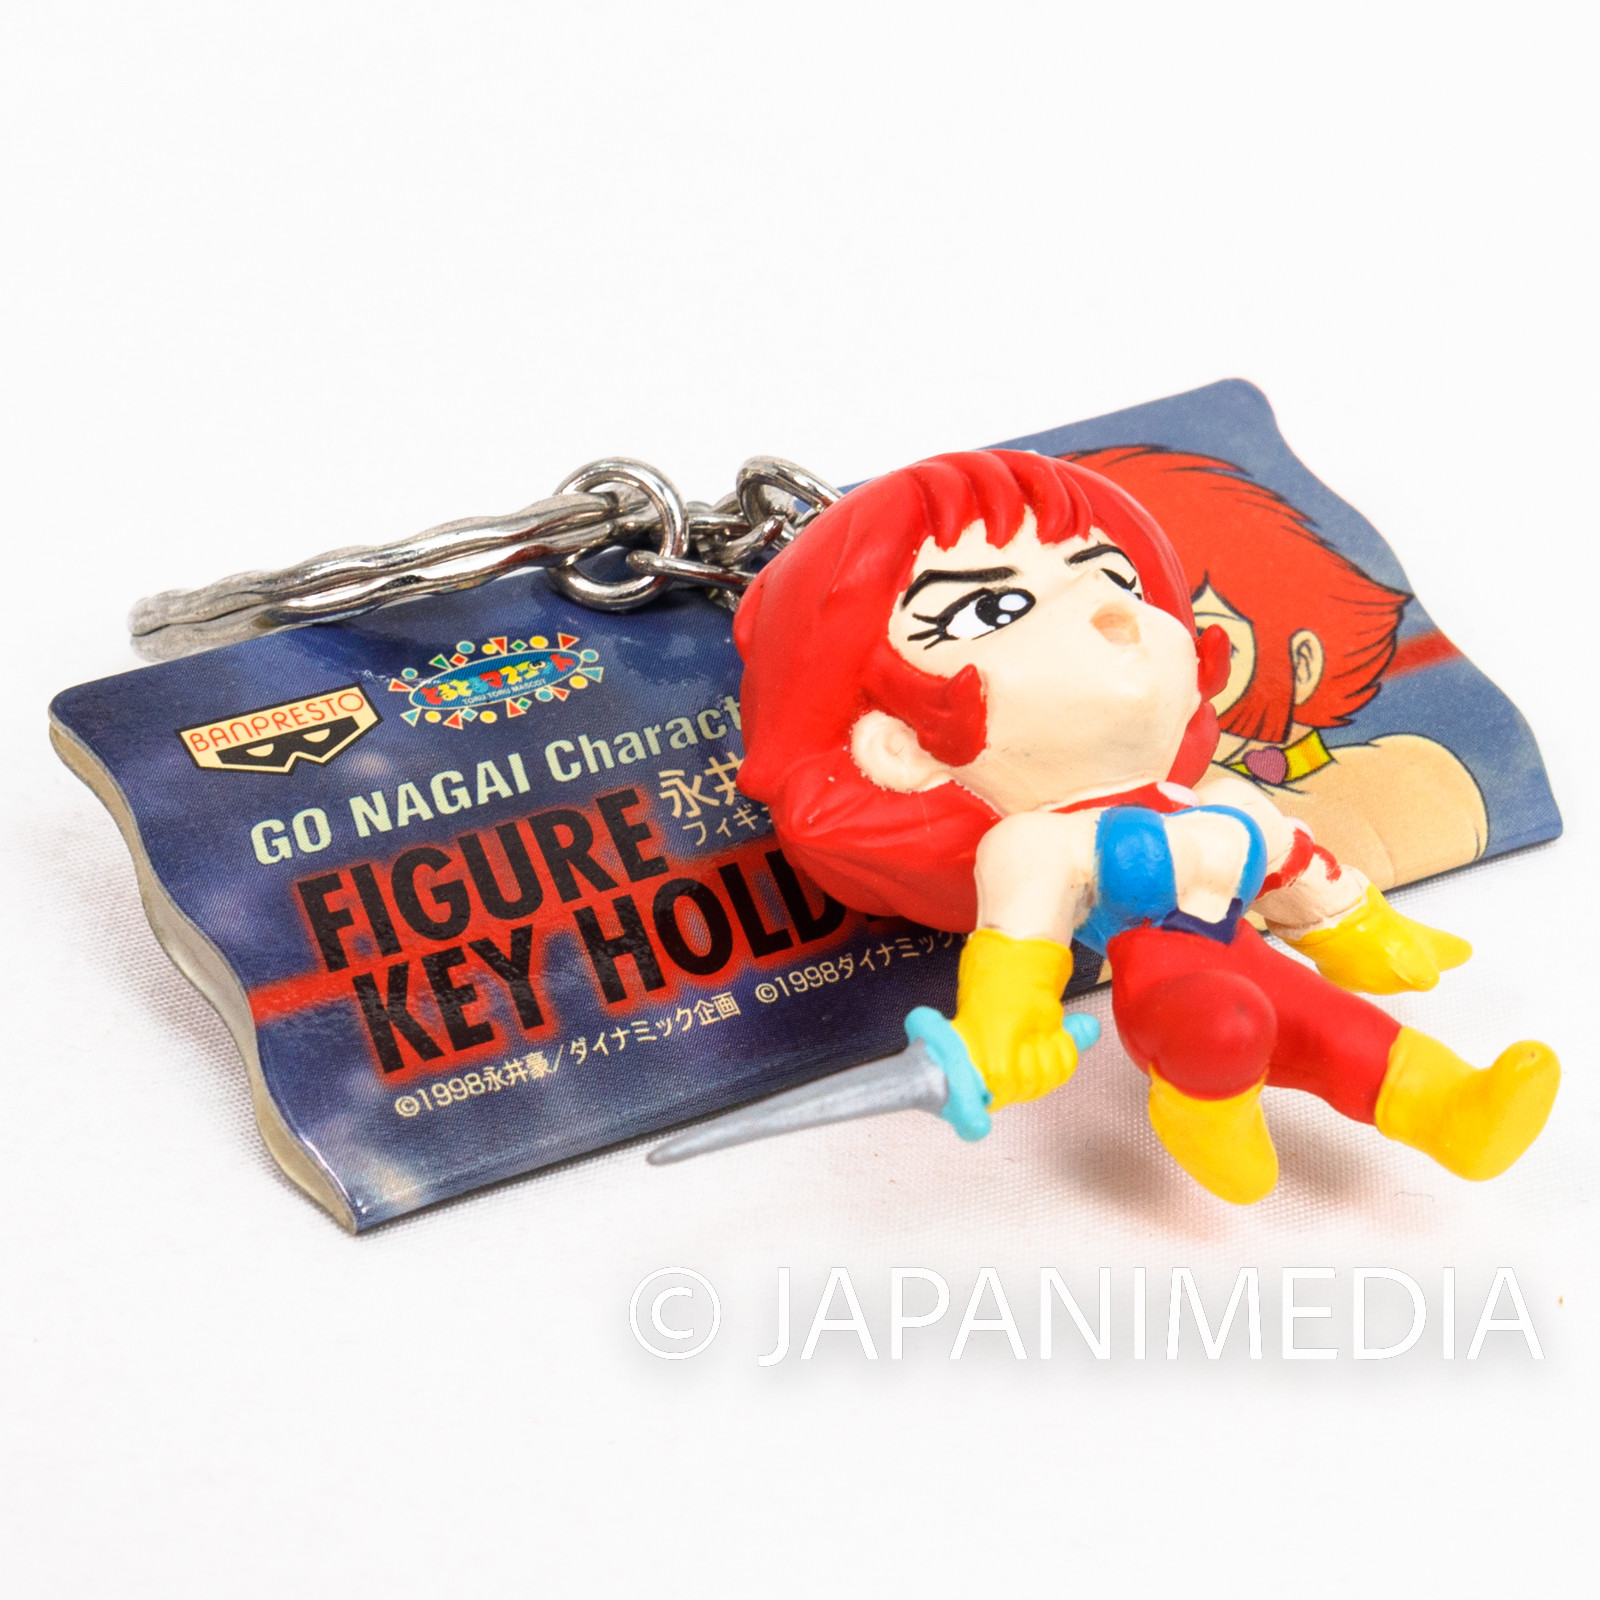 Cutie Honey Kisaragi Figure Key Chain JAPAN ANIME MANGA NAGAI GO